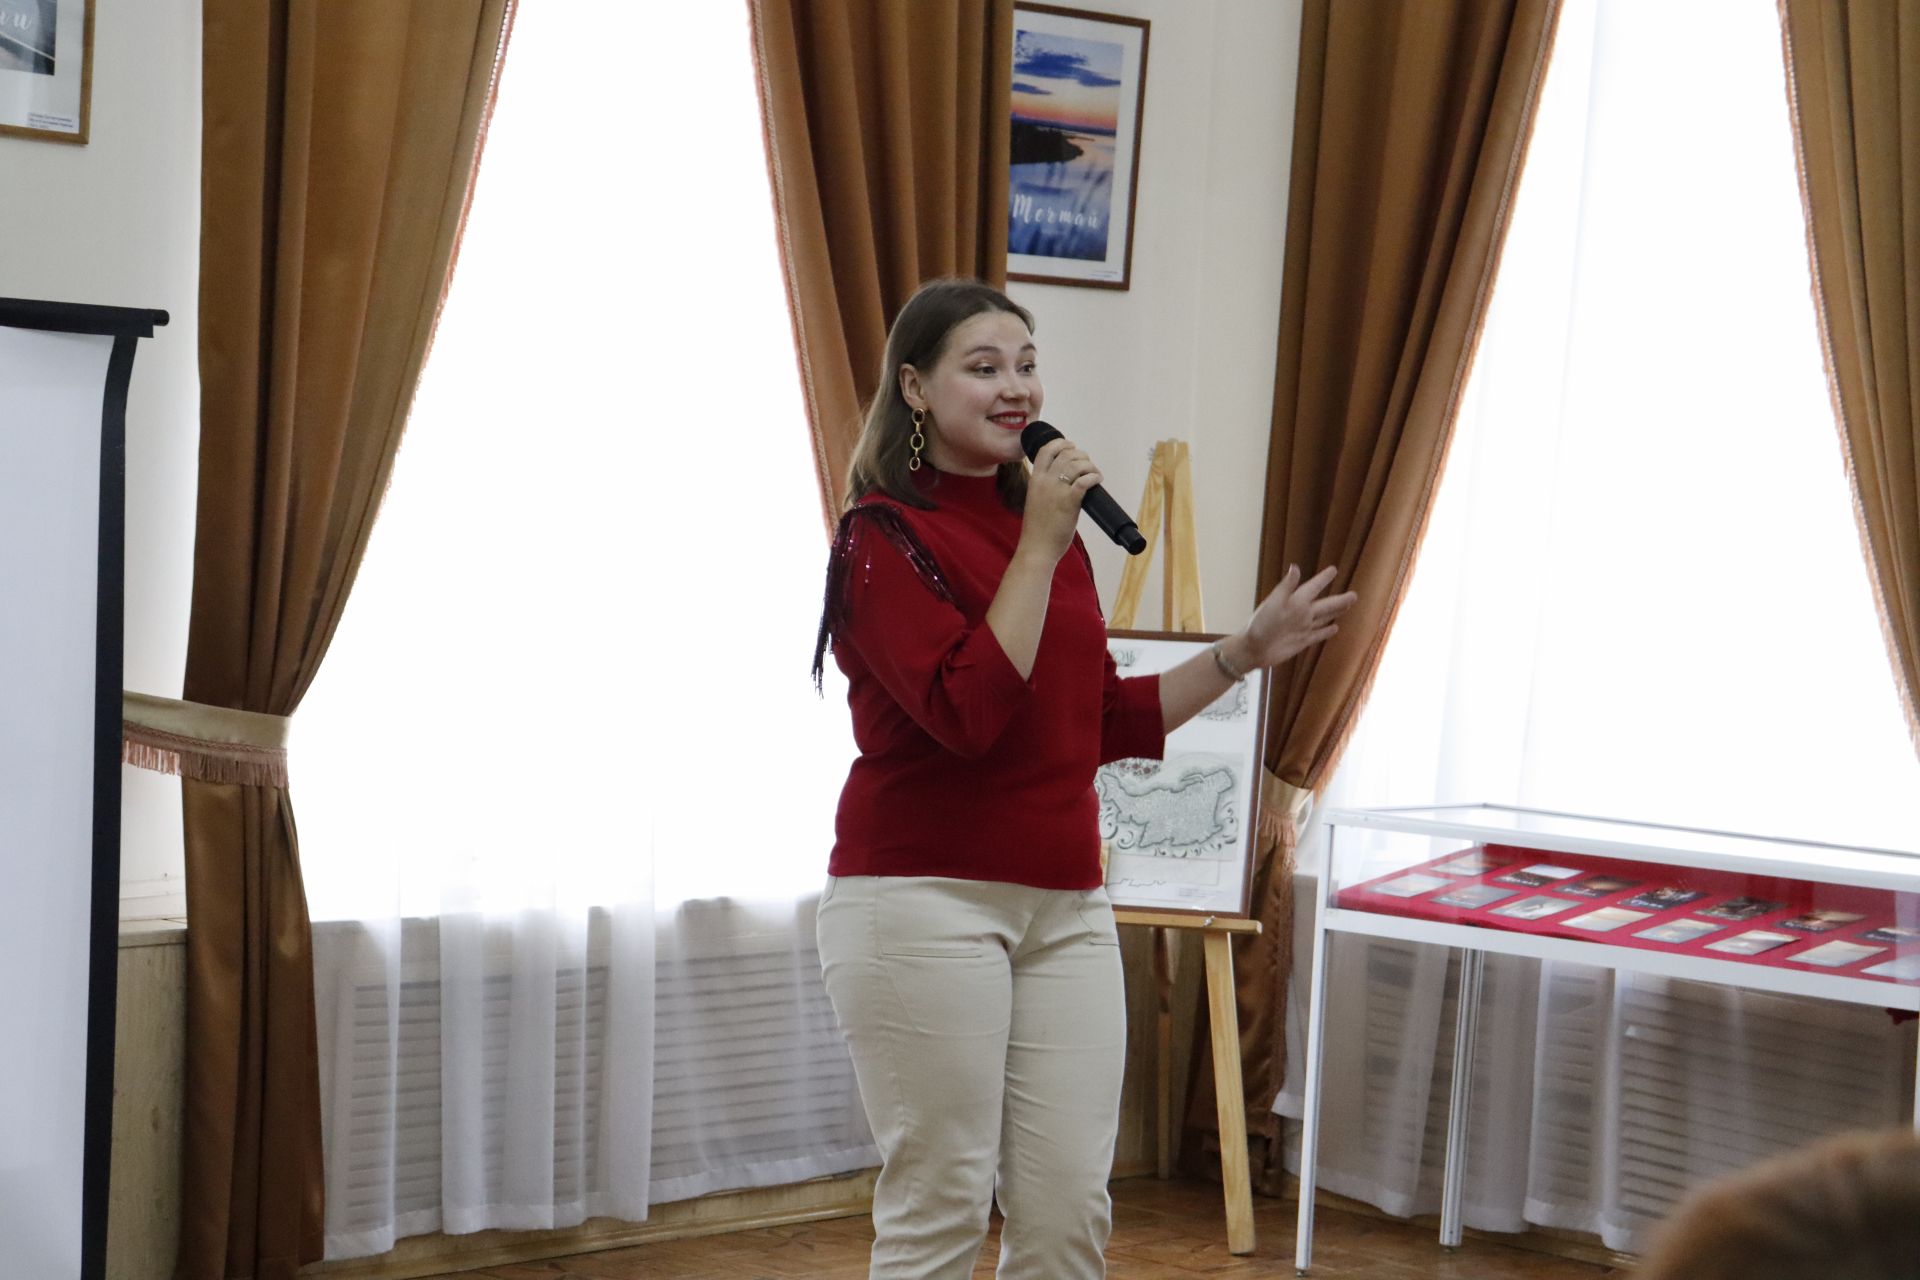 Молодые блогеры из Чистополя презентовали свои фотооткрытки